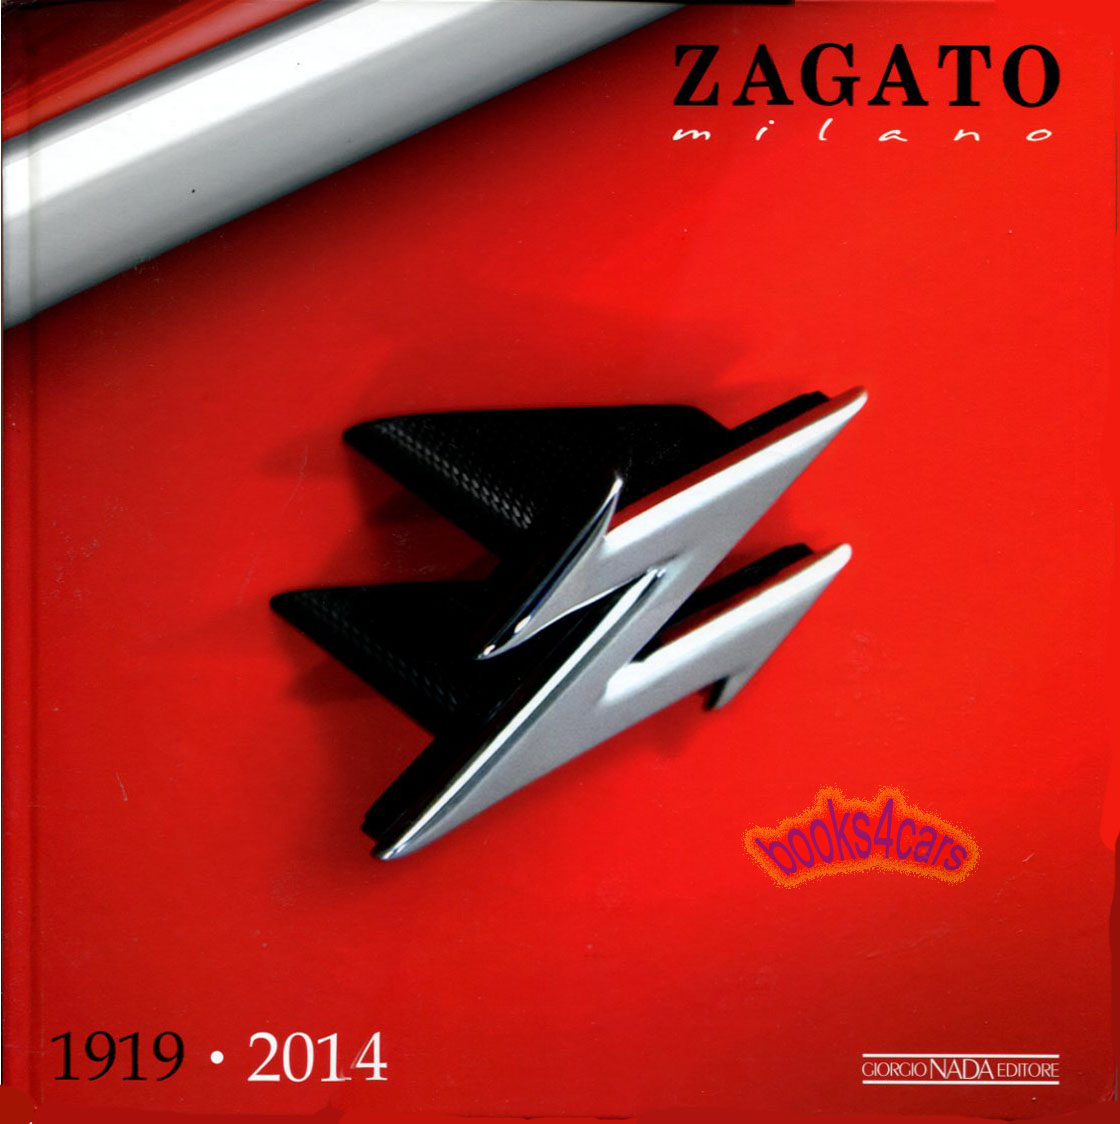 Zagato Milano 1919-2014 by Zagato & Di Taranto 176 pages hardcover